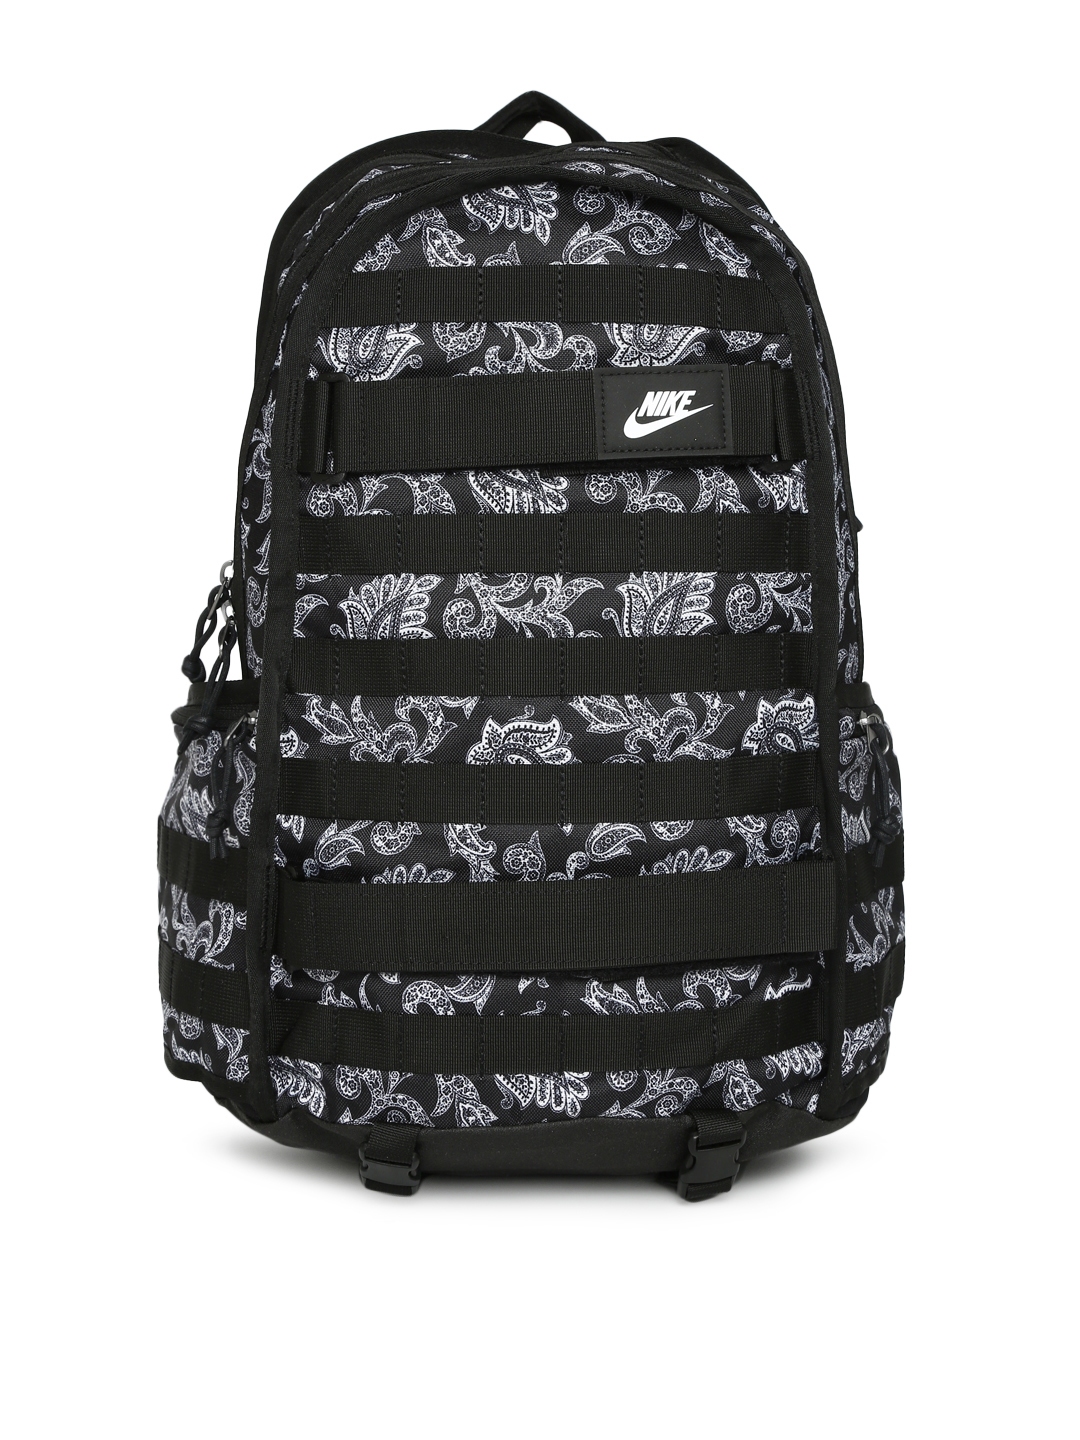 nike backpack warranty